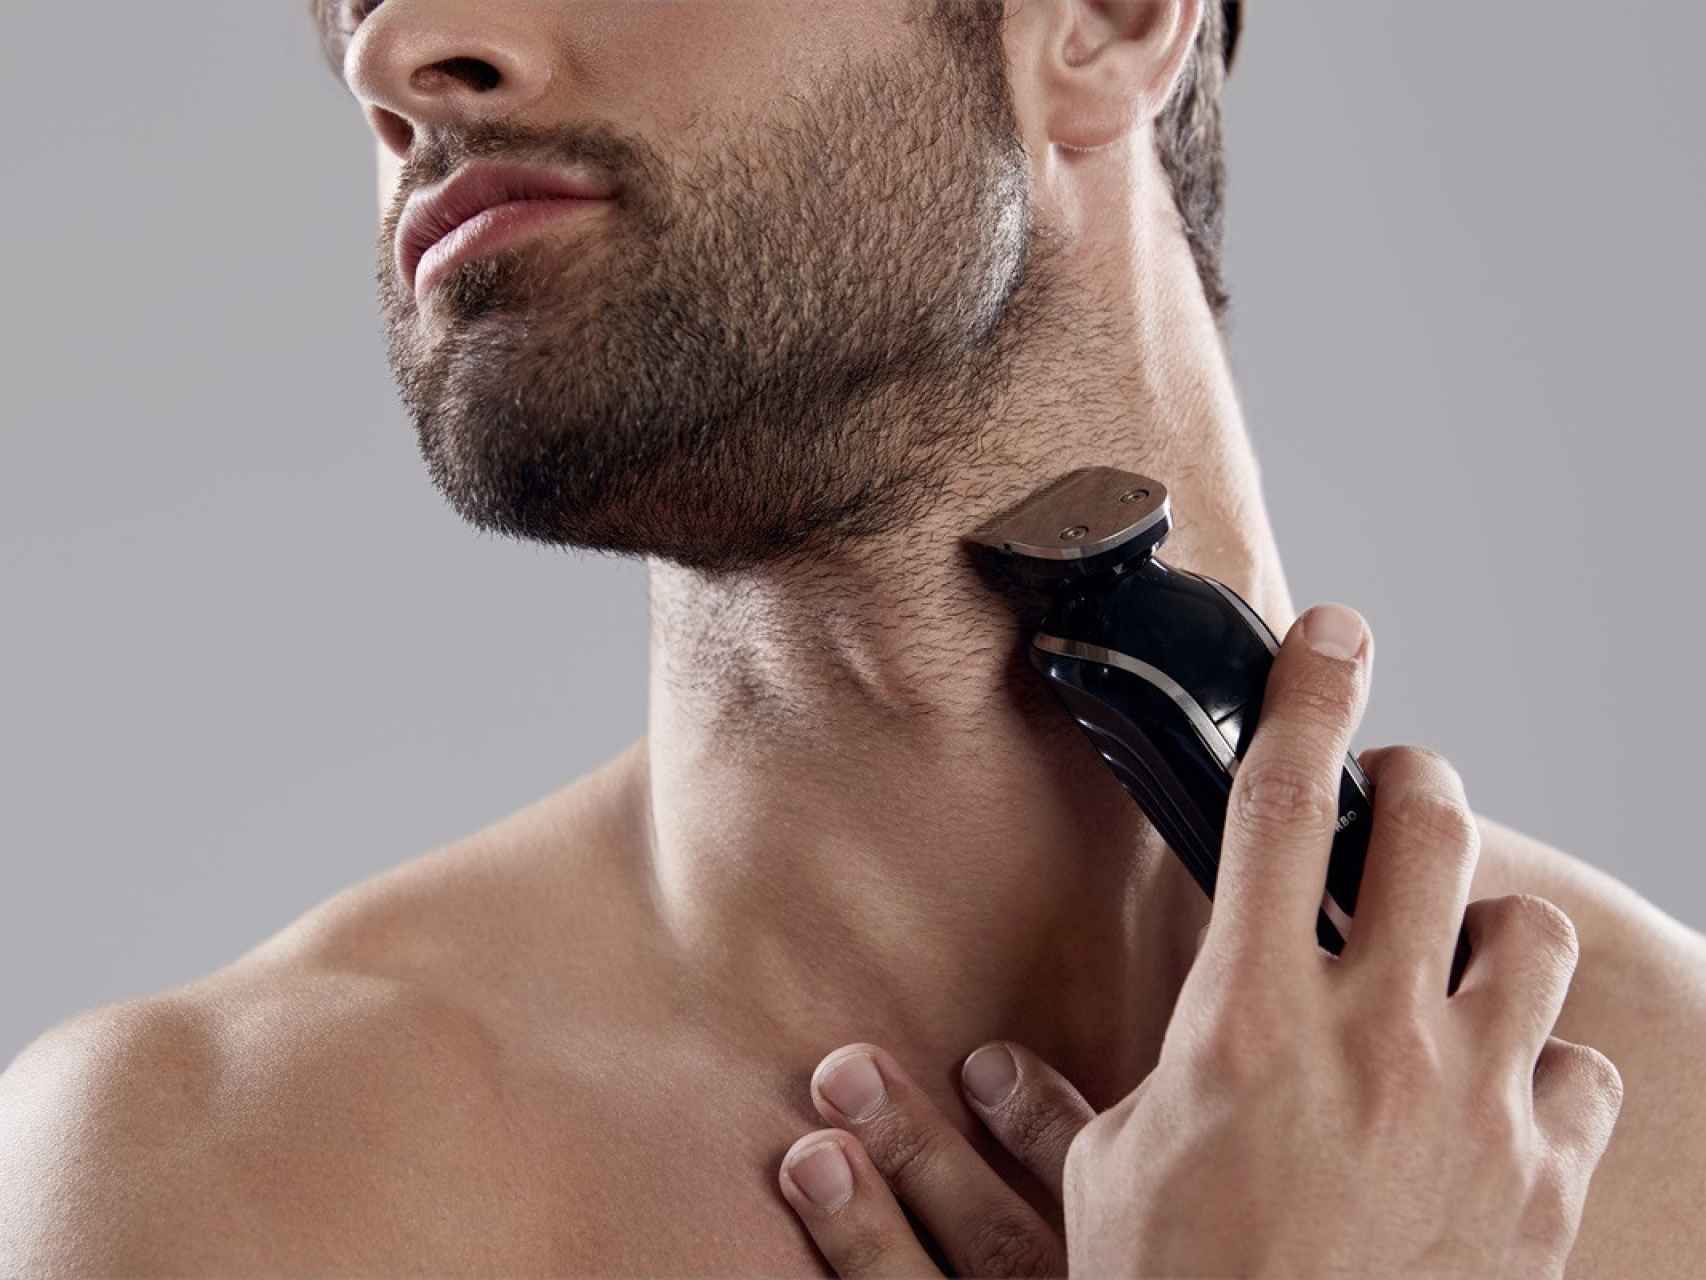 Maquina De Afeitar Electrica Para Hombre Afeitadora Rasuradora Barba  Trimmer Gol